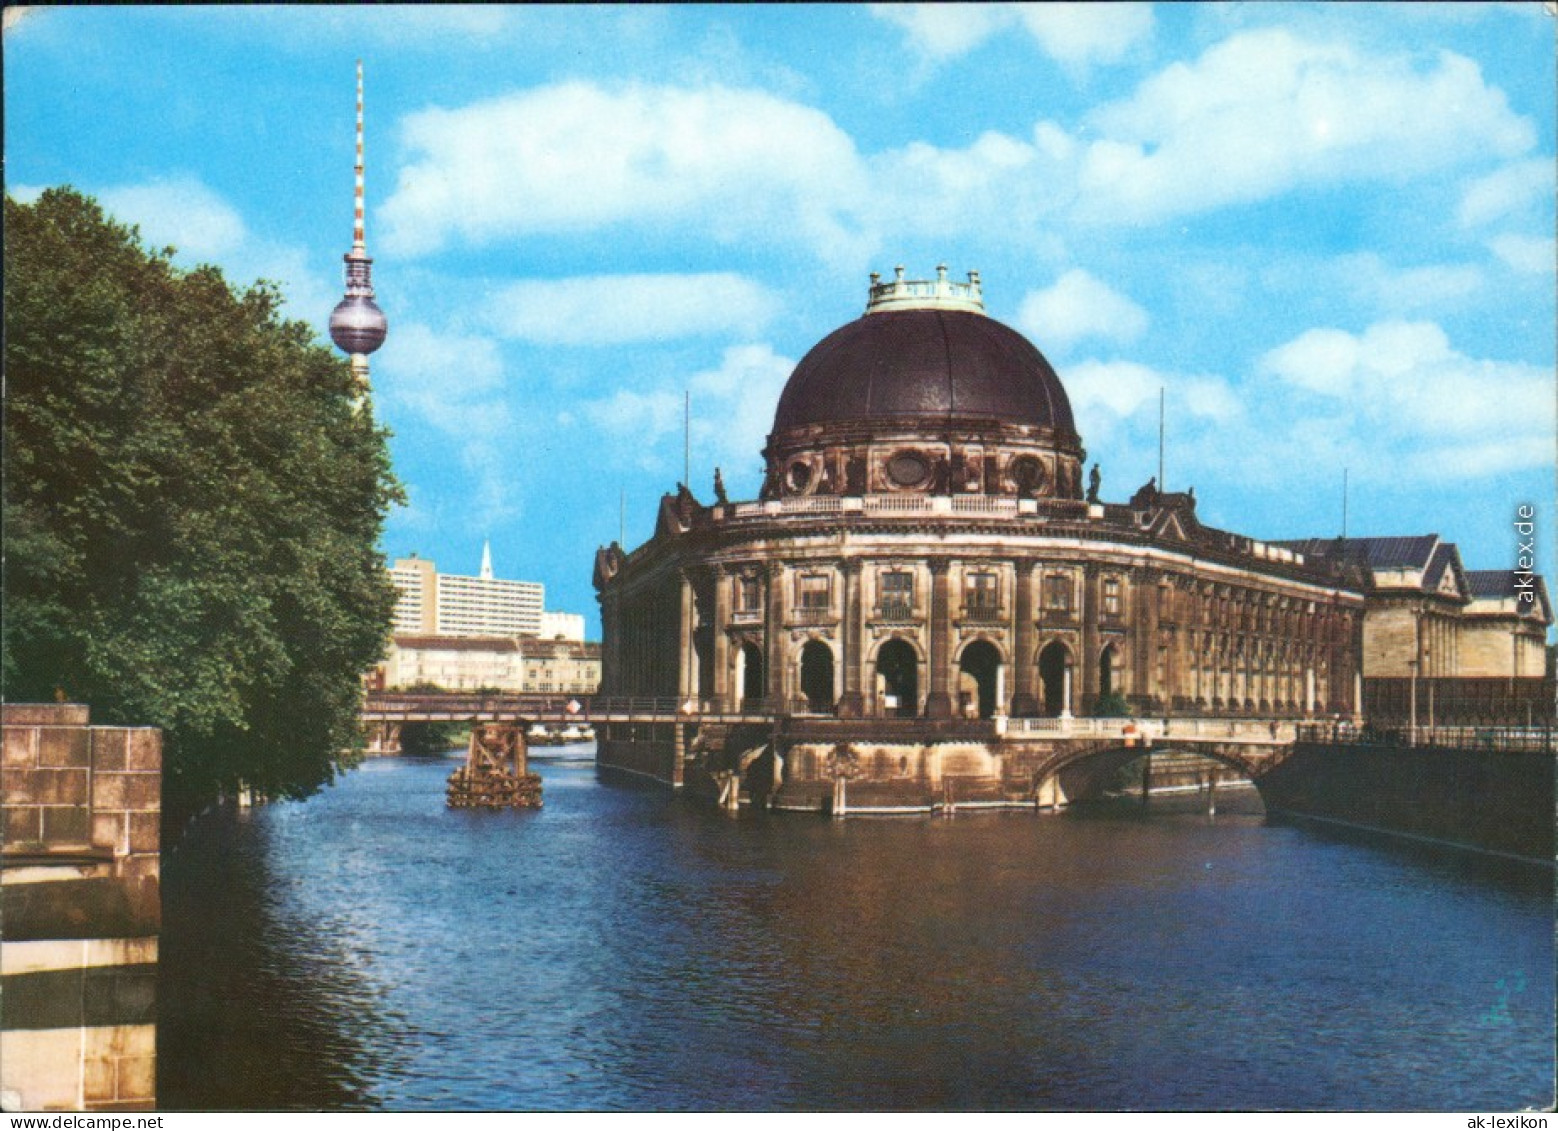 Ansichtskarte Mitte-Berlin Staatliche Museen Zu Berlin, Museumsinsel 1974 - Mitte